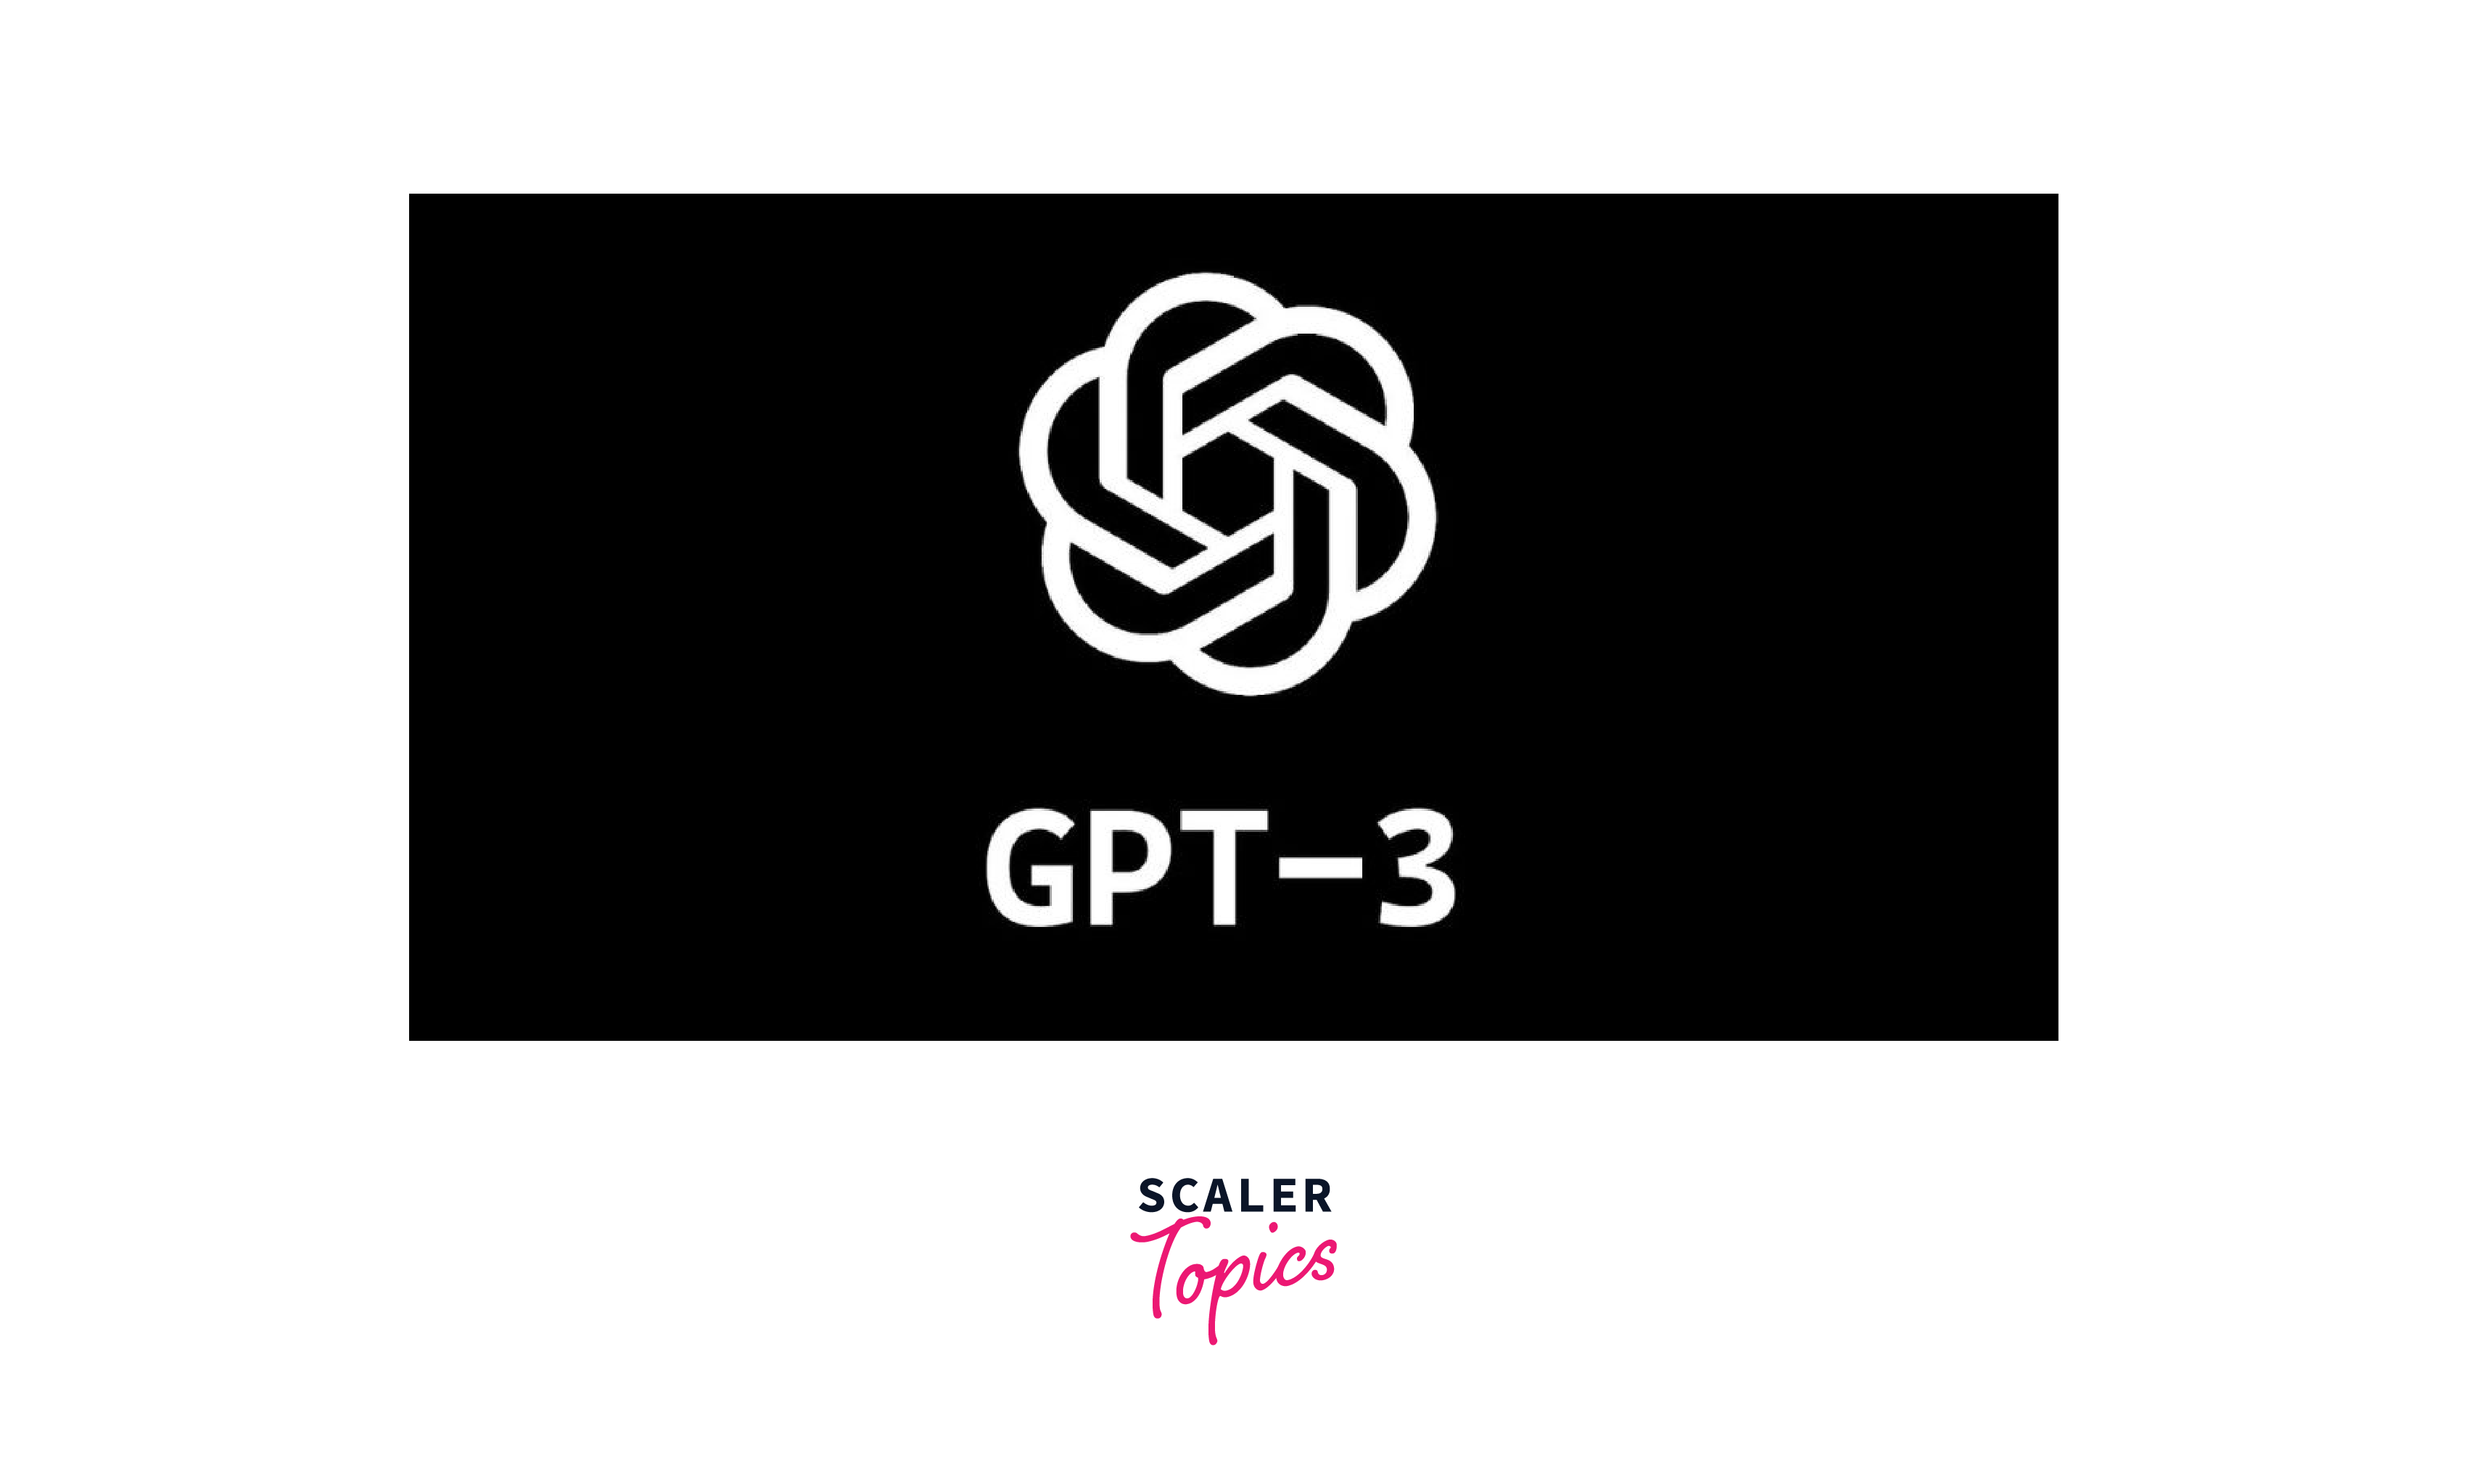 gpt-3 logo